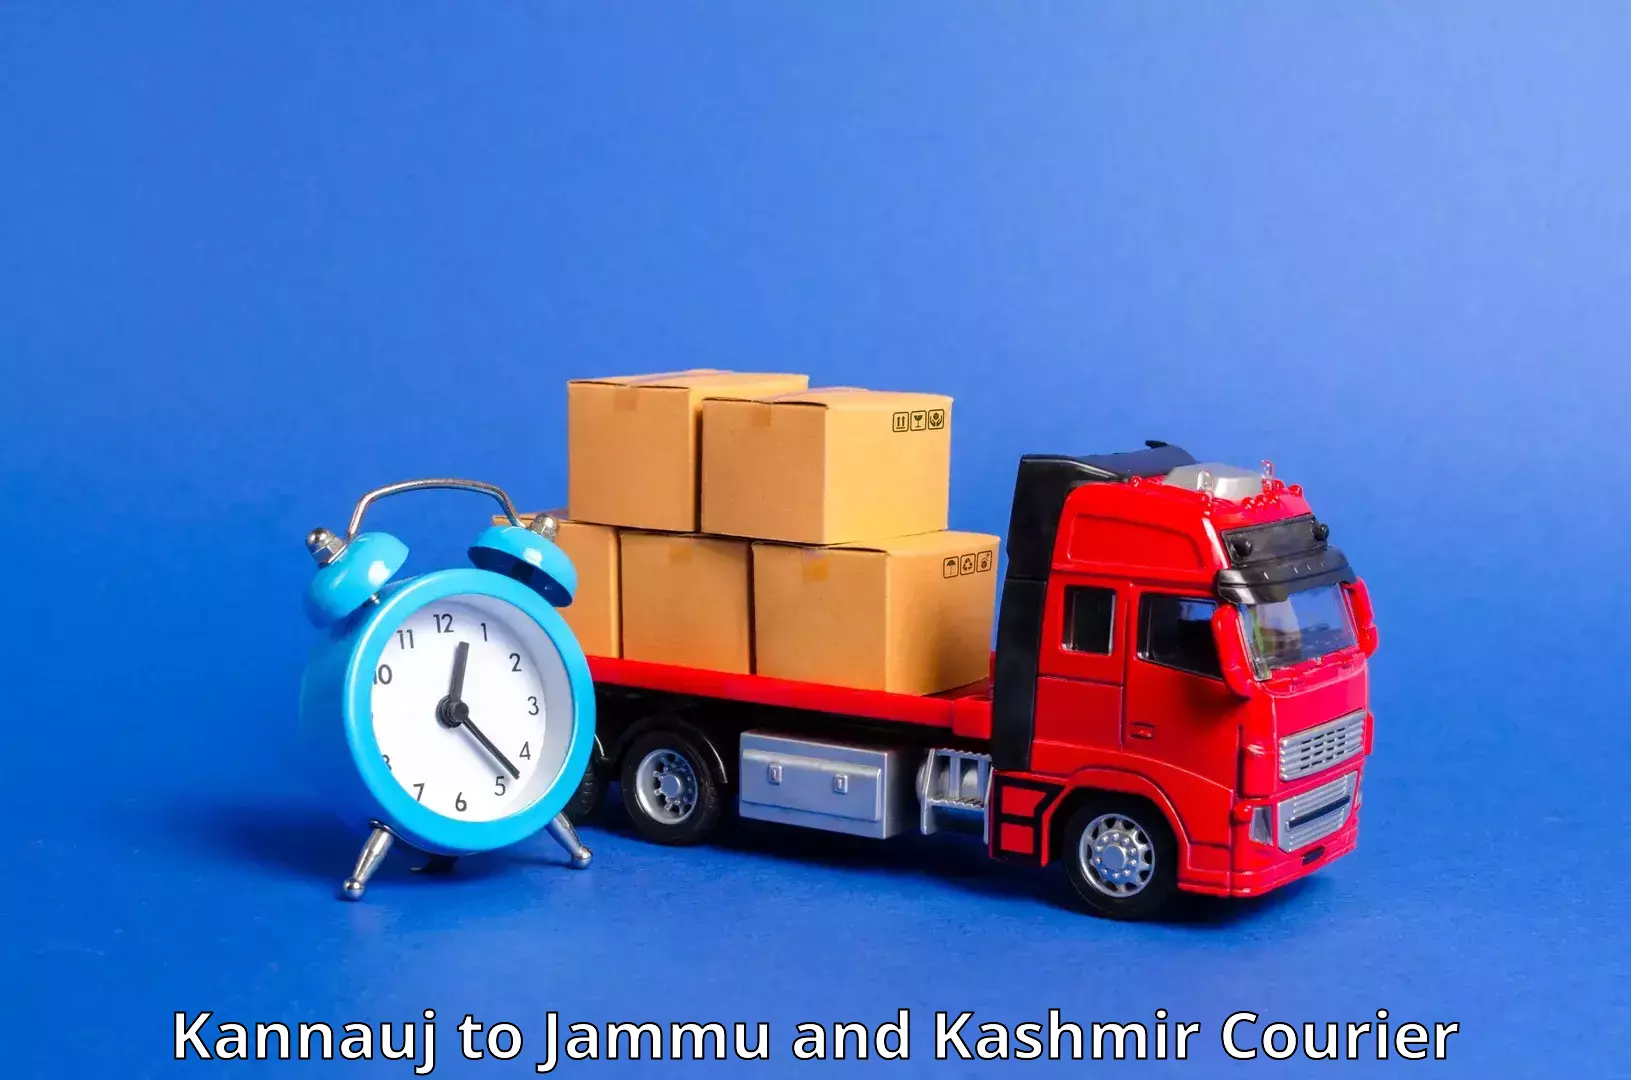 Doorstep delivery service Kannauj to University of Jammu